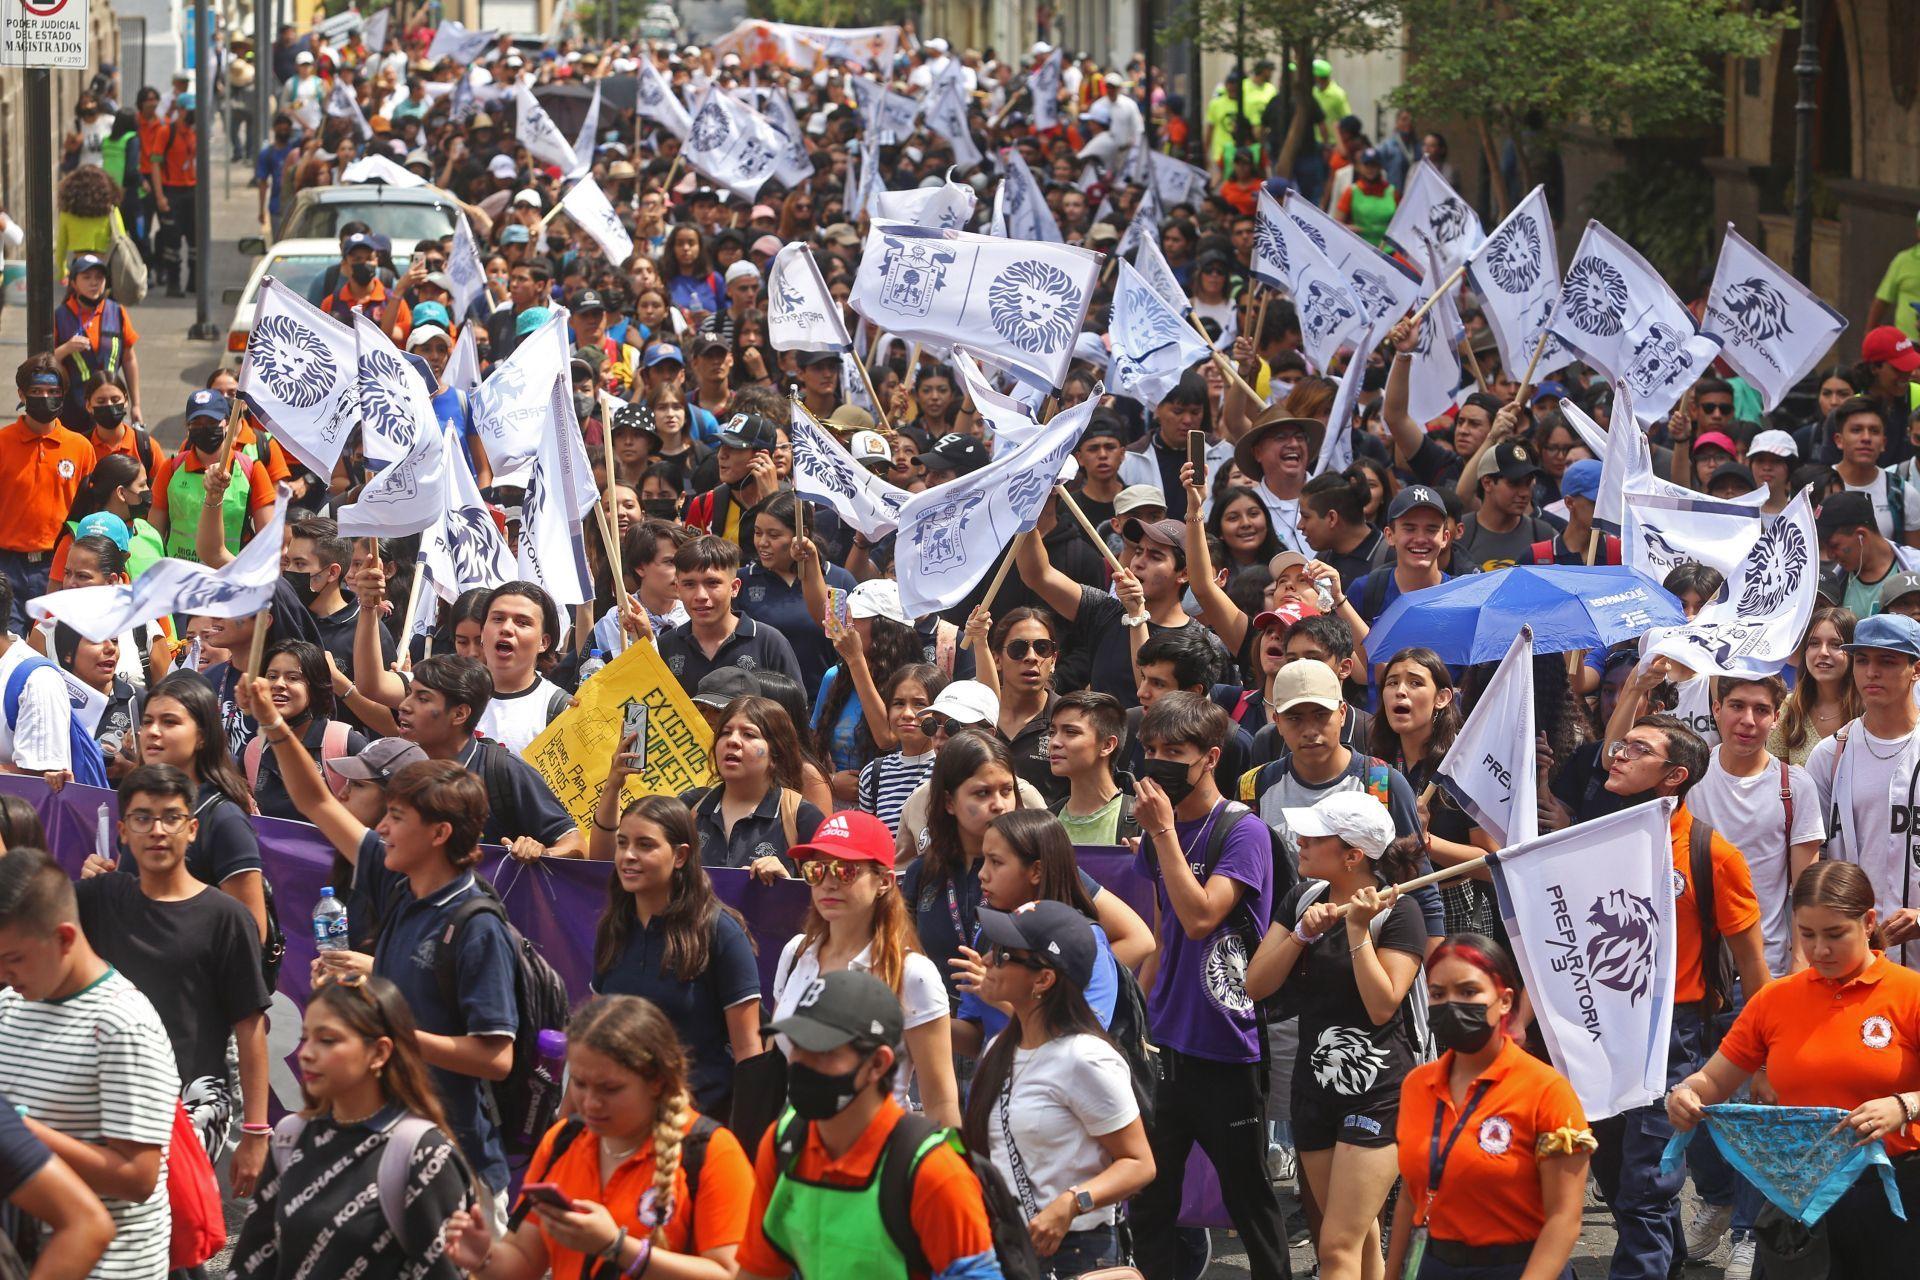 Megamarcha UdG: Comunidad universitaria exige presupuesto justo; Enrique Alfaro niega recorte